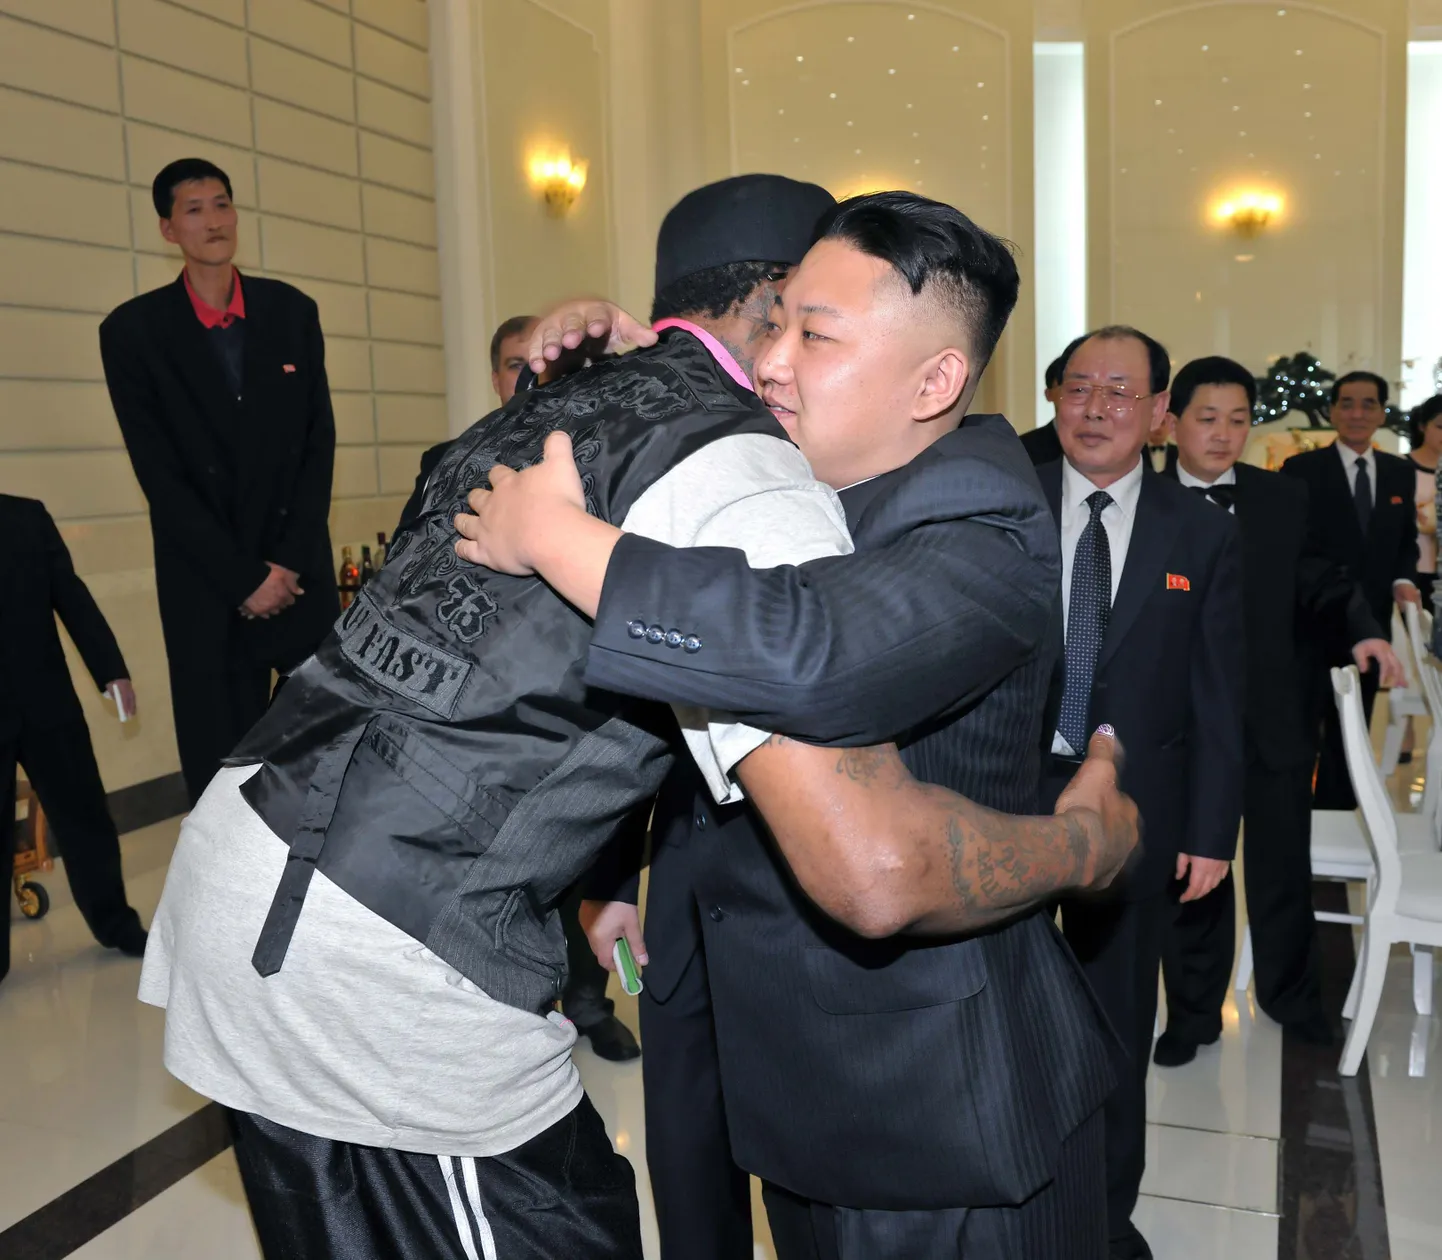 Põhja-Korea liider Kim Jong-Un (paremal) on näidanud ennast suure korvpallisõbrana, kuid seni ei ole teada, kuidas ta suhtub kergejõustikusse.